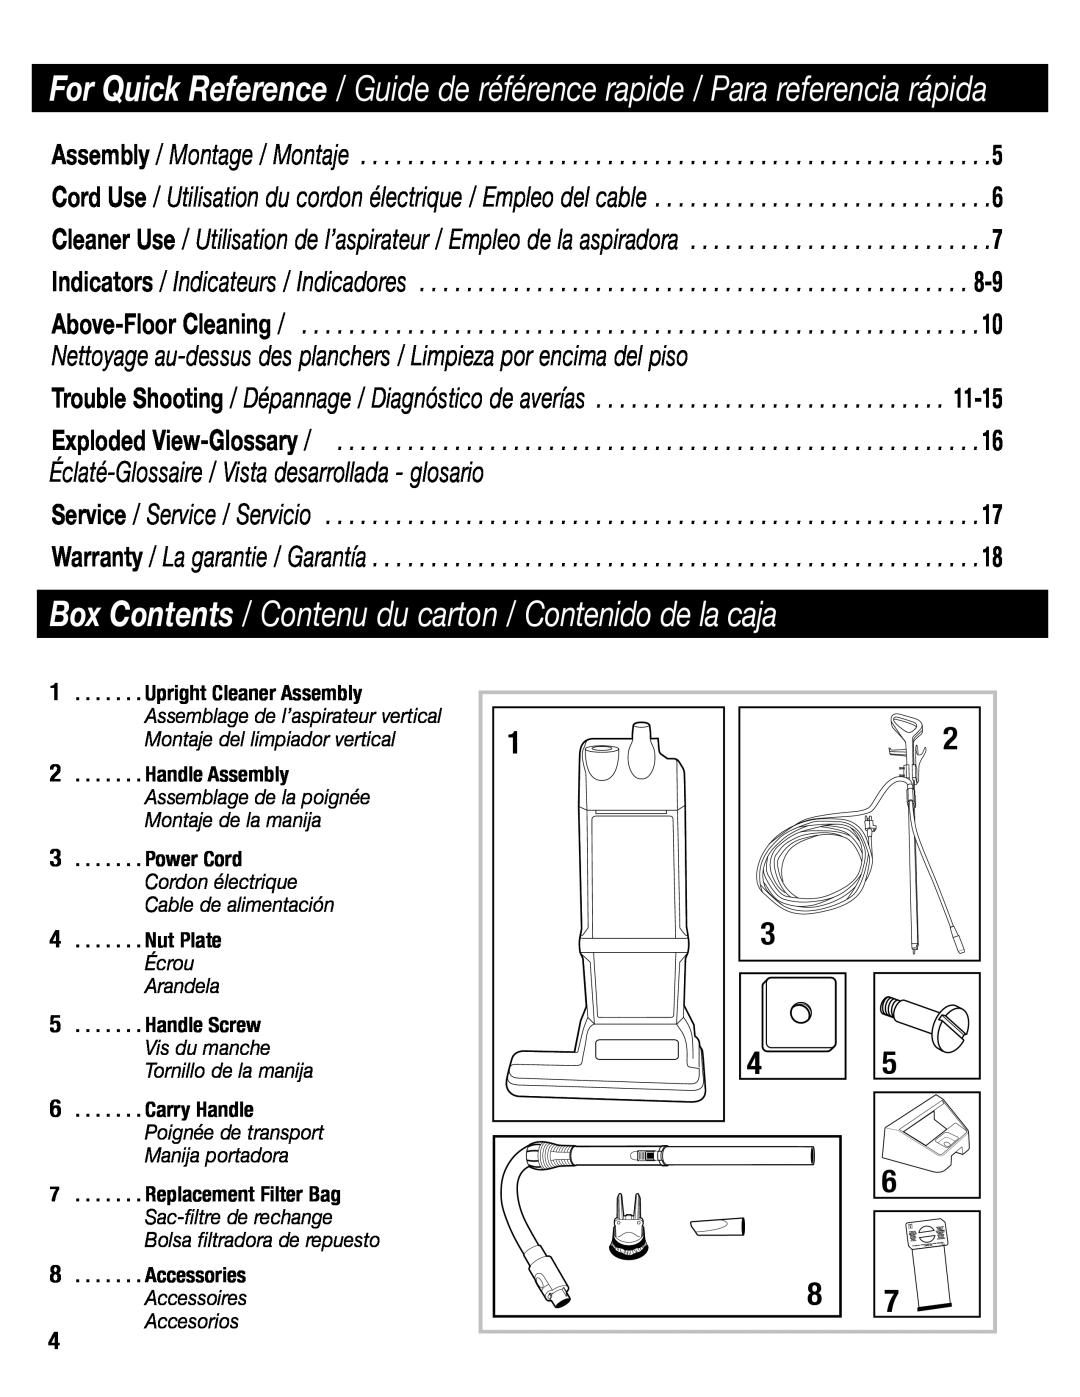 Sanitaire SC6600 manual Box Contents / Contenu du carton / Contenido de la caja, Accesorios 